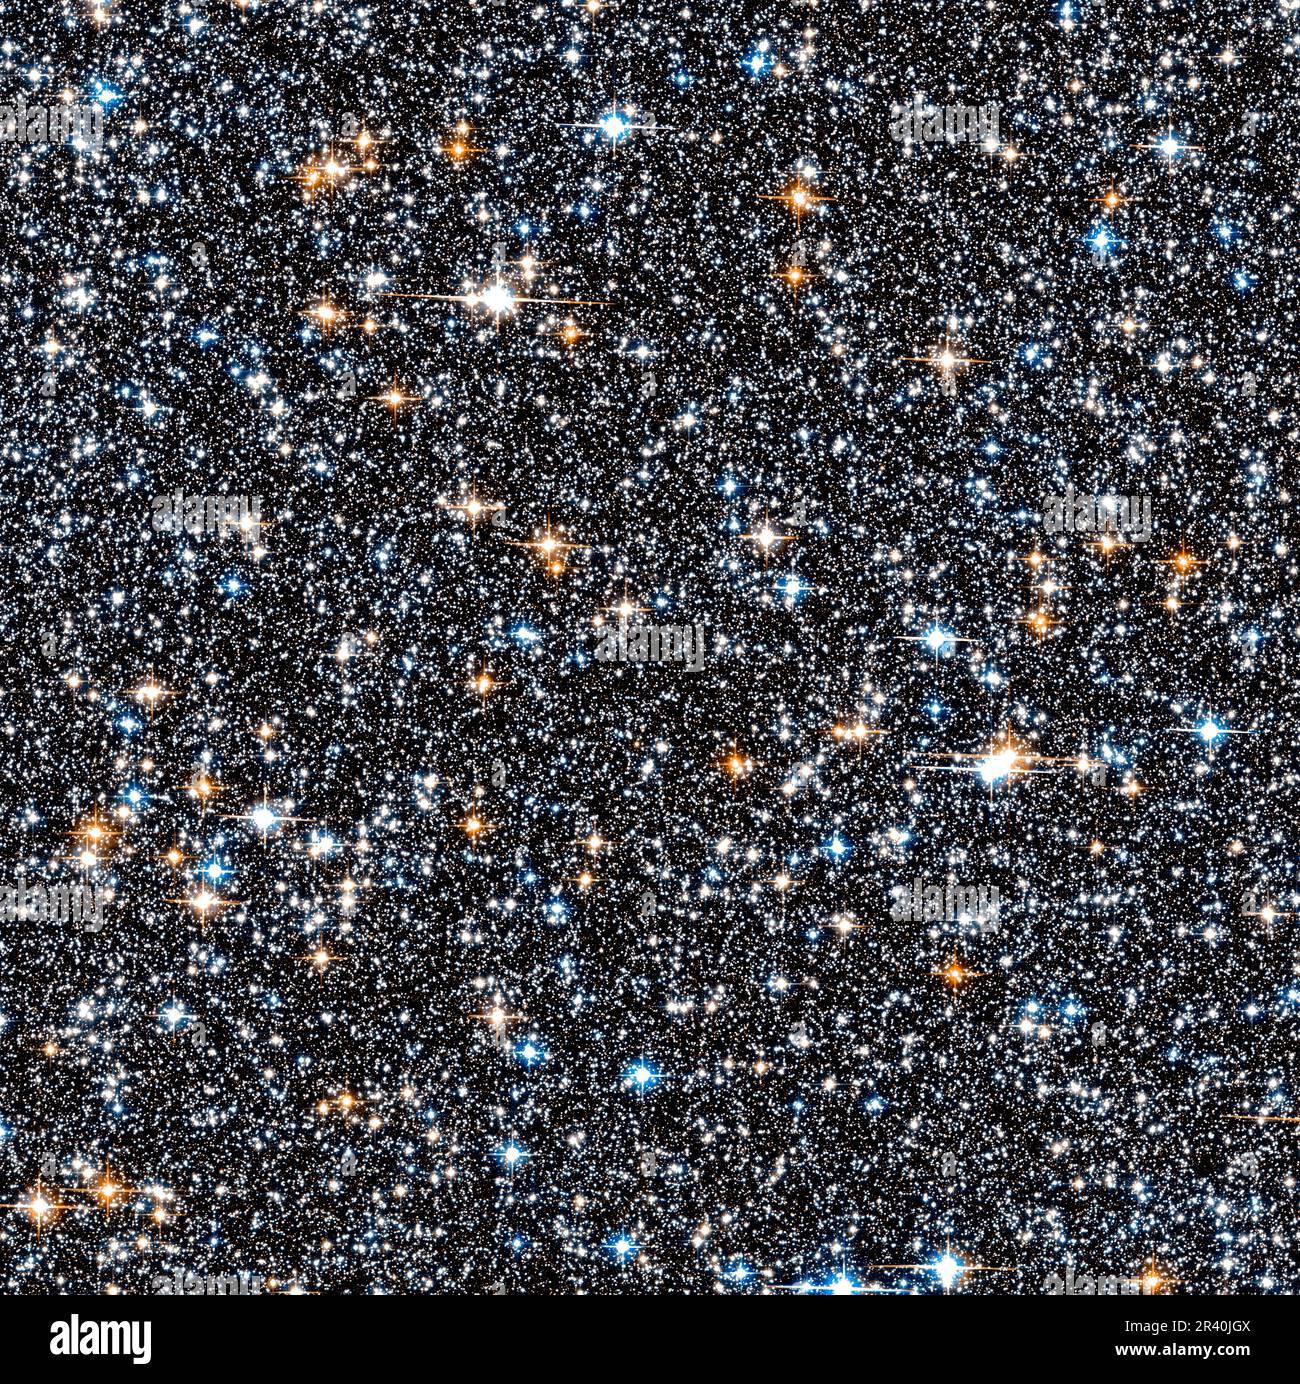 Petite section de la dense collection d'étoiles entassées ensemble dans la bosse galactique de la voie lactée. Banque D'Images